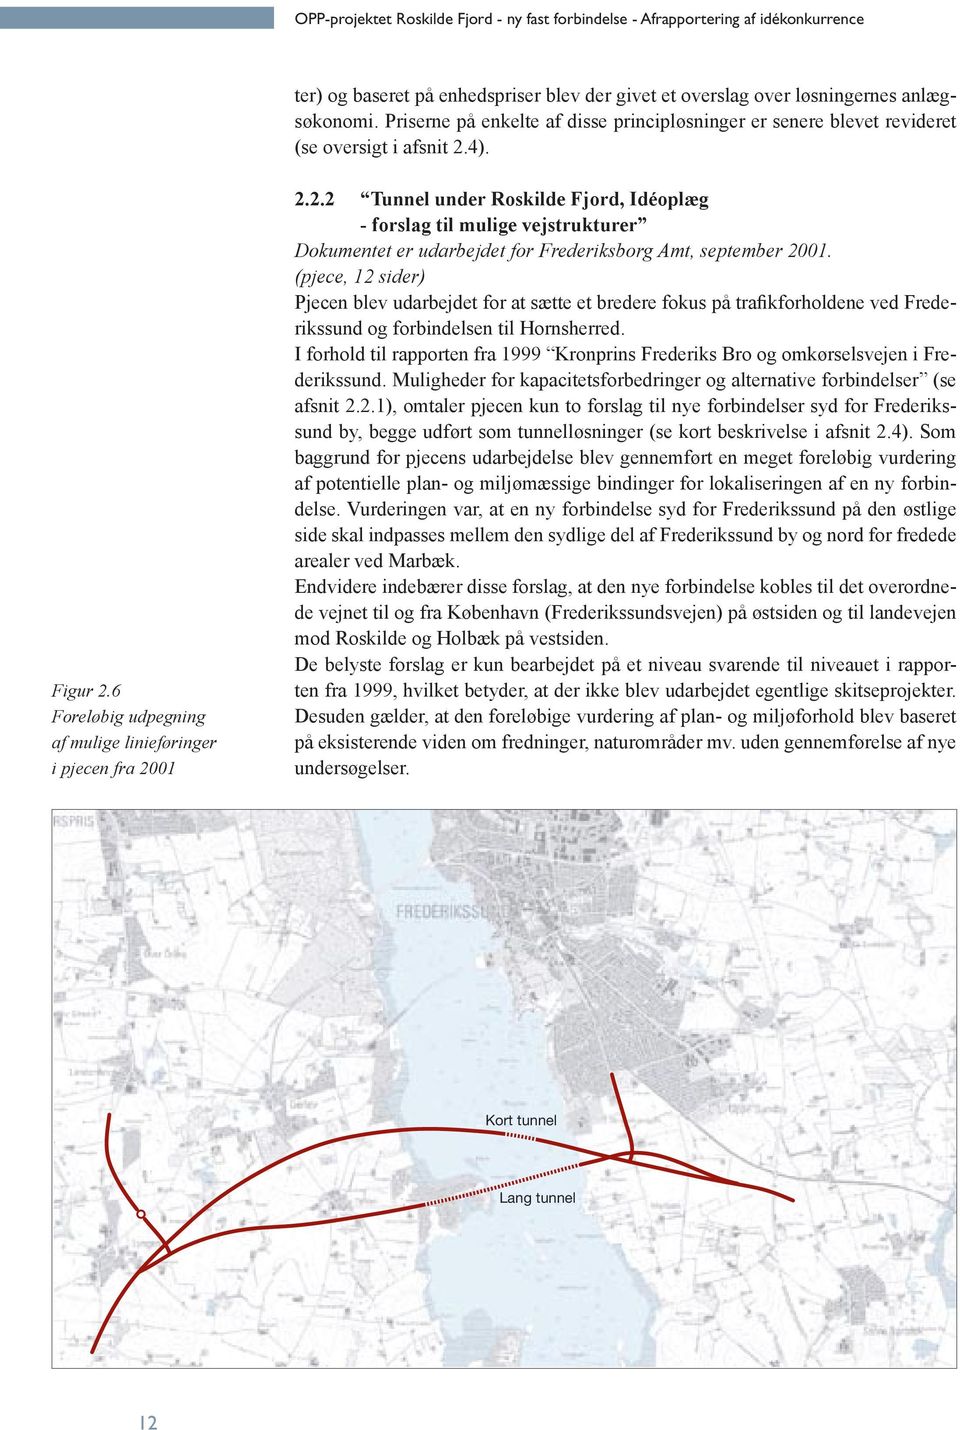 4). Figur 2.6 Foreløbig udpegning af mulige linieføringer i pjecen fra 2001 2.2.2 Tunnel under Roskilde Fjord, Idéoplæg - forslag til mulige vejstrukturer Dokumentet er udarbejdet for Frederiksborg Amt, september 2001.